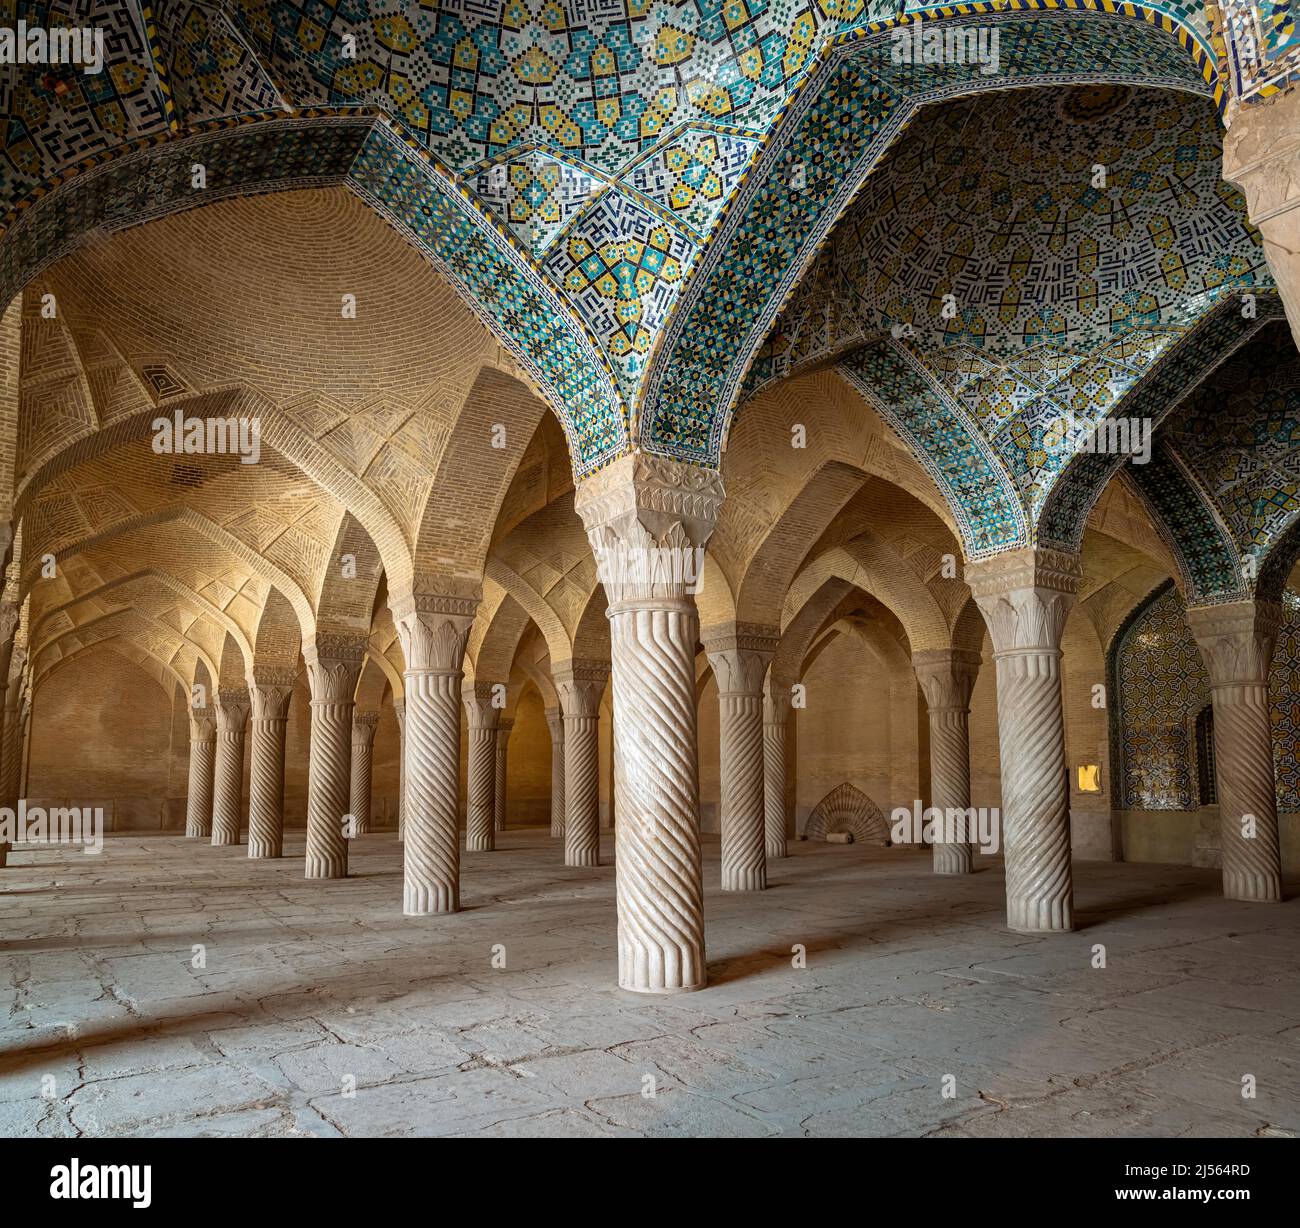 Shiraz, Iran - Mai 2019: Der Gebetsraum der Vakil Moschee mit Säulen. Vakil bedeutet Regent, Titel von Karim Khan, Gründer der Zand-Dynastie. Stockfoto